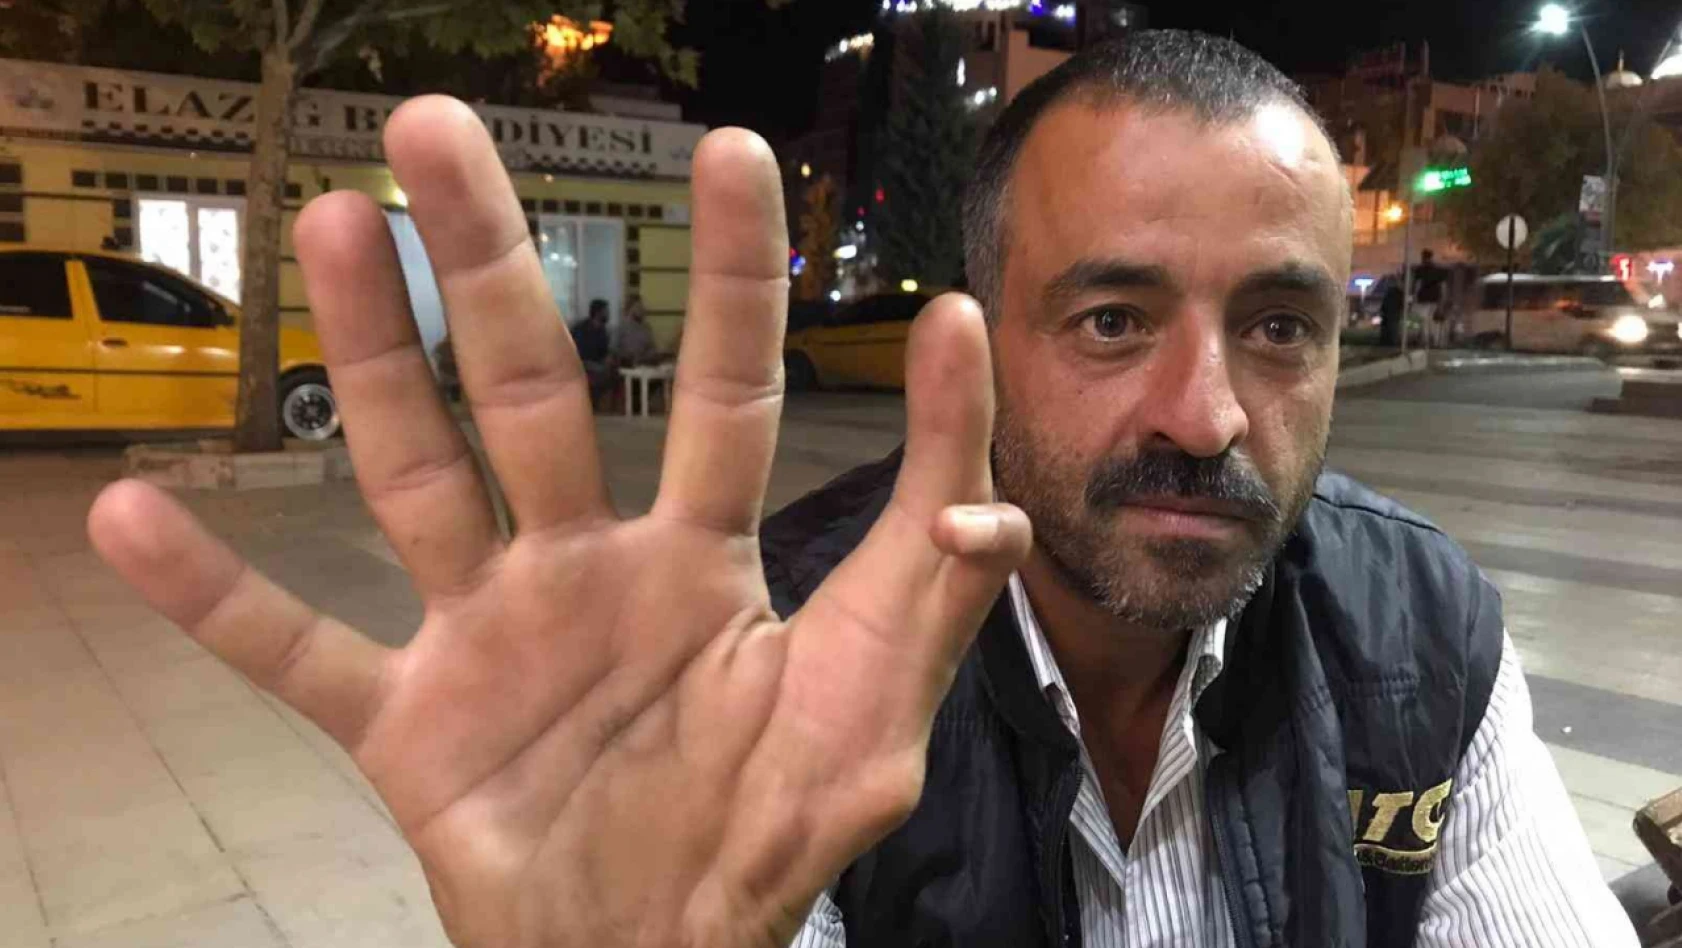 Elazığ'da 11 parmaklı adam görenleri hayrete düşürüyor